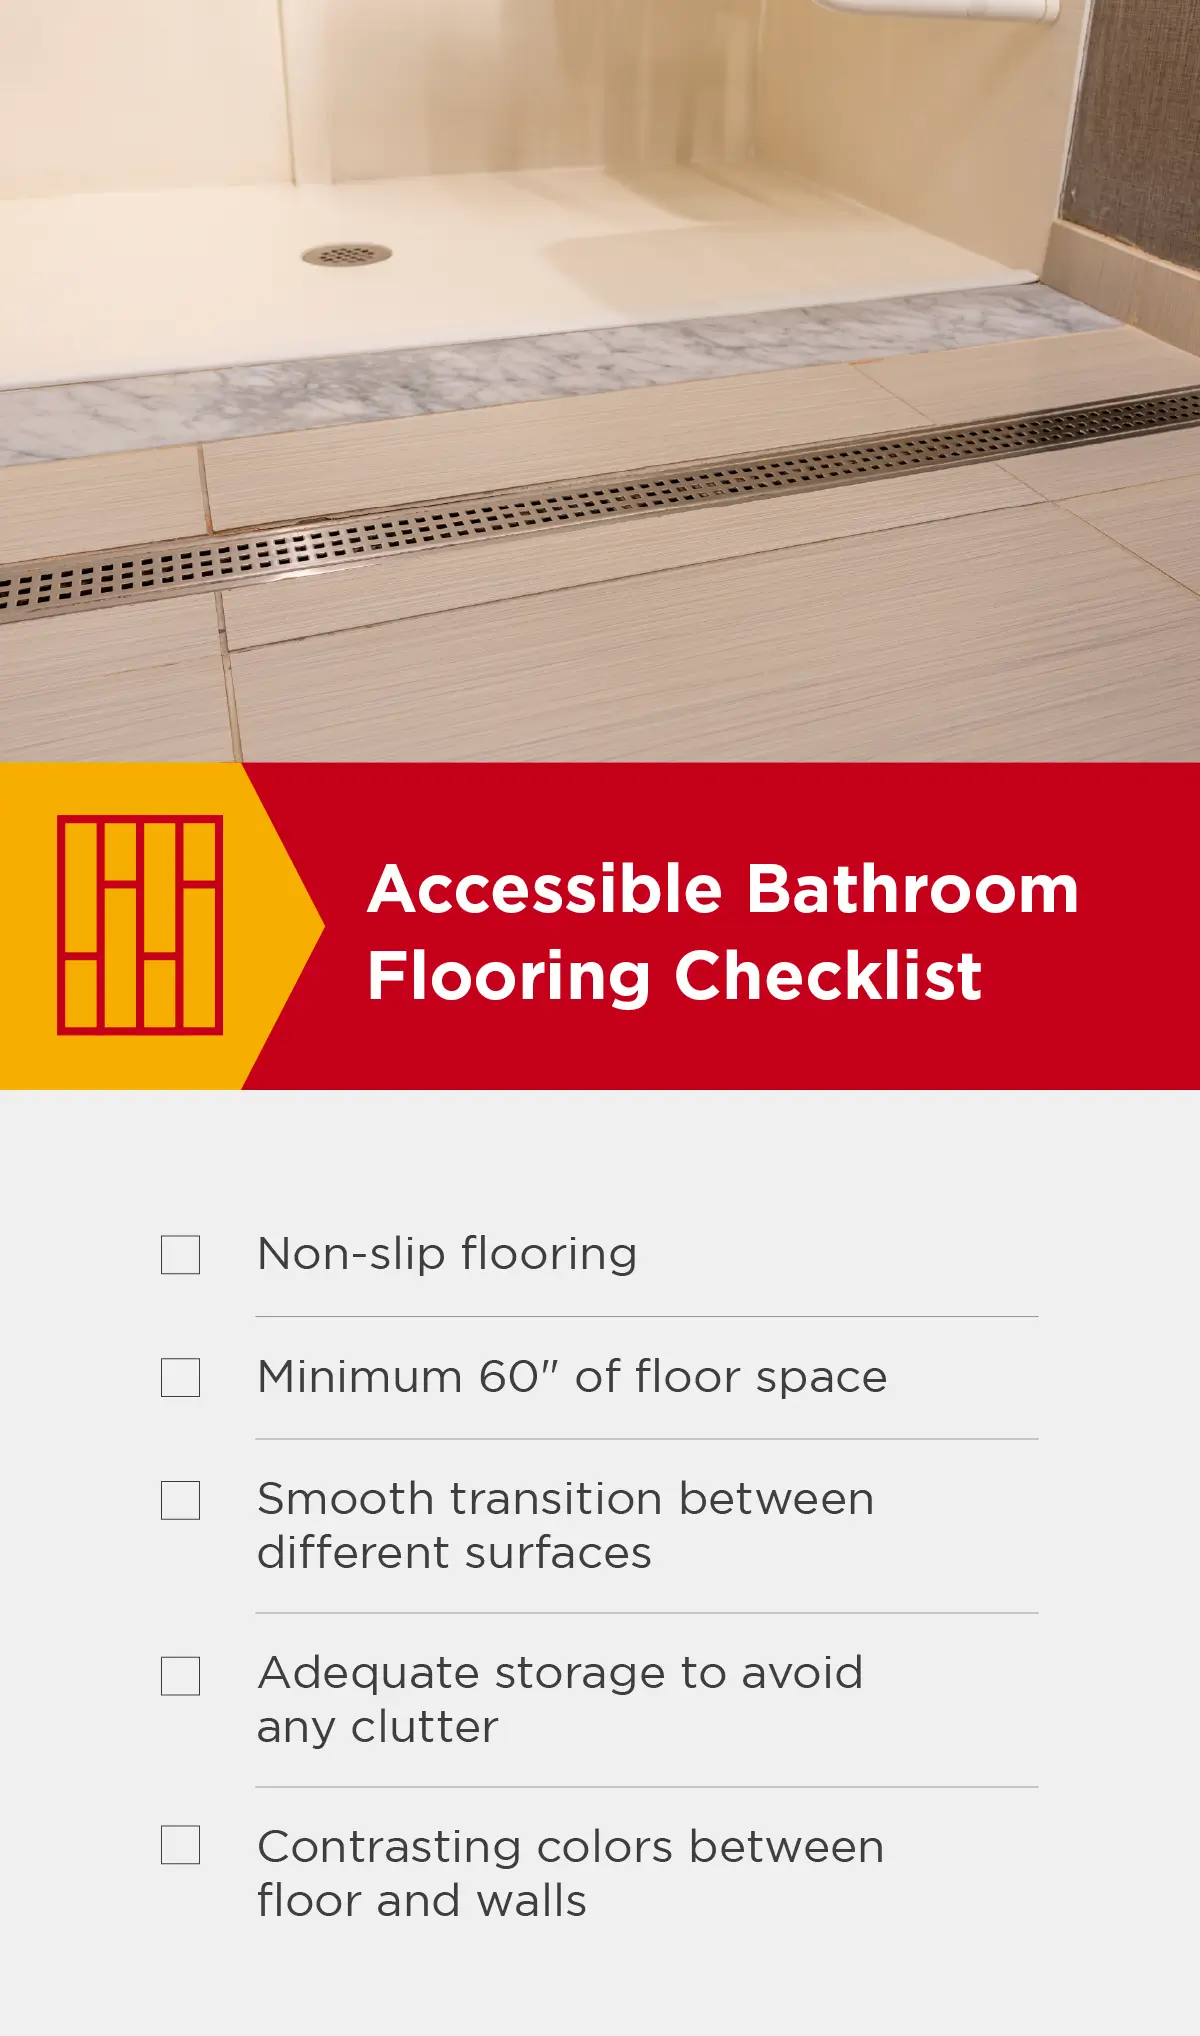 Accessible bathroom flooring checklist